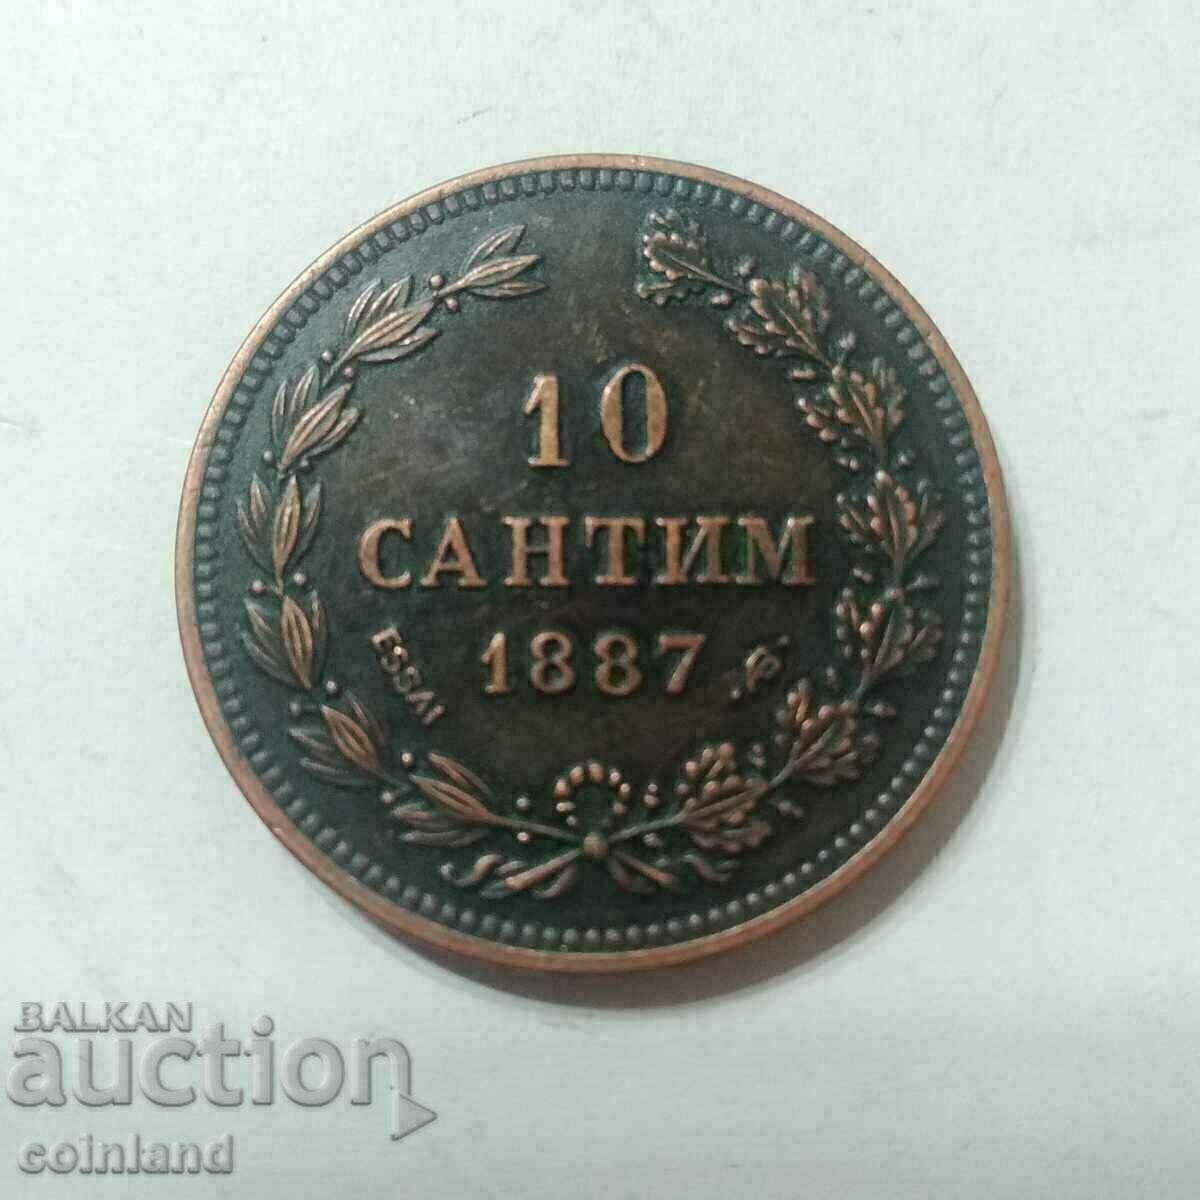 10 σεντ 1887 - ΑΝΑΠΑΡΑΓΩΓΗ ΡΕΠΛΙΚΩΝ